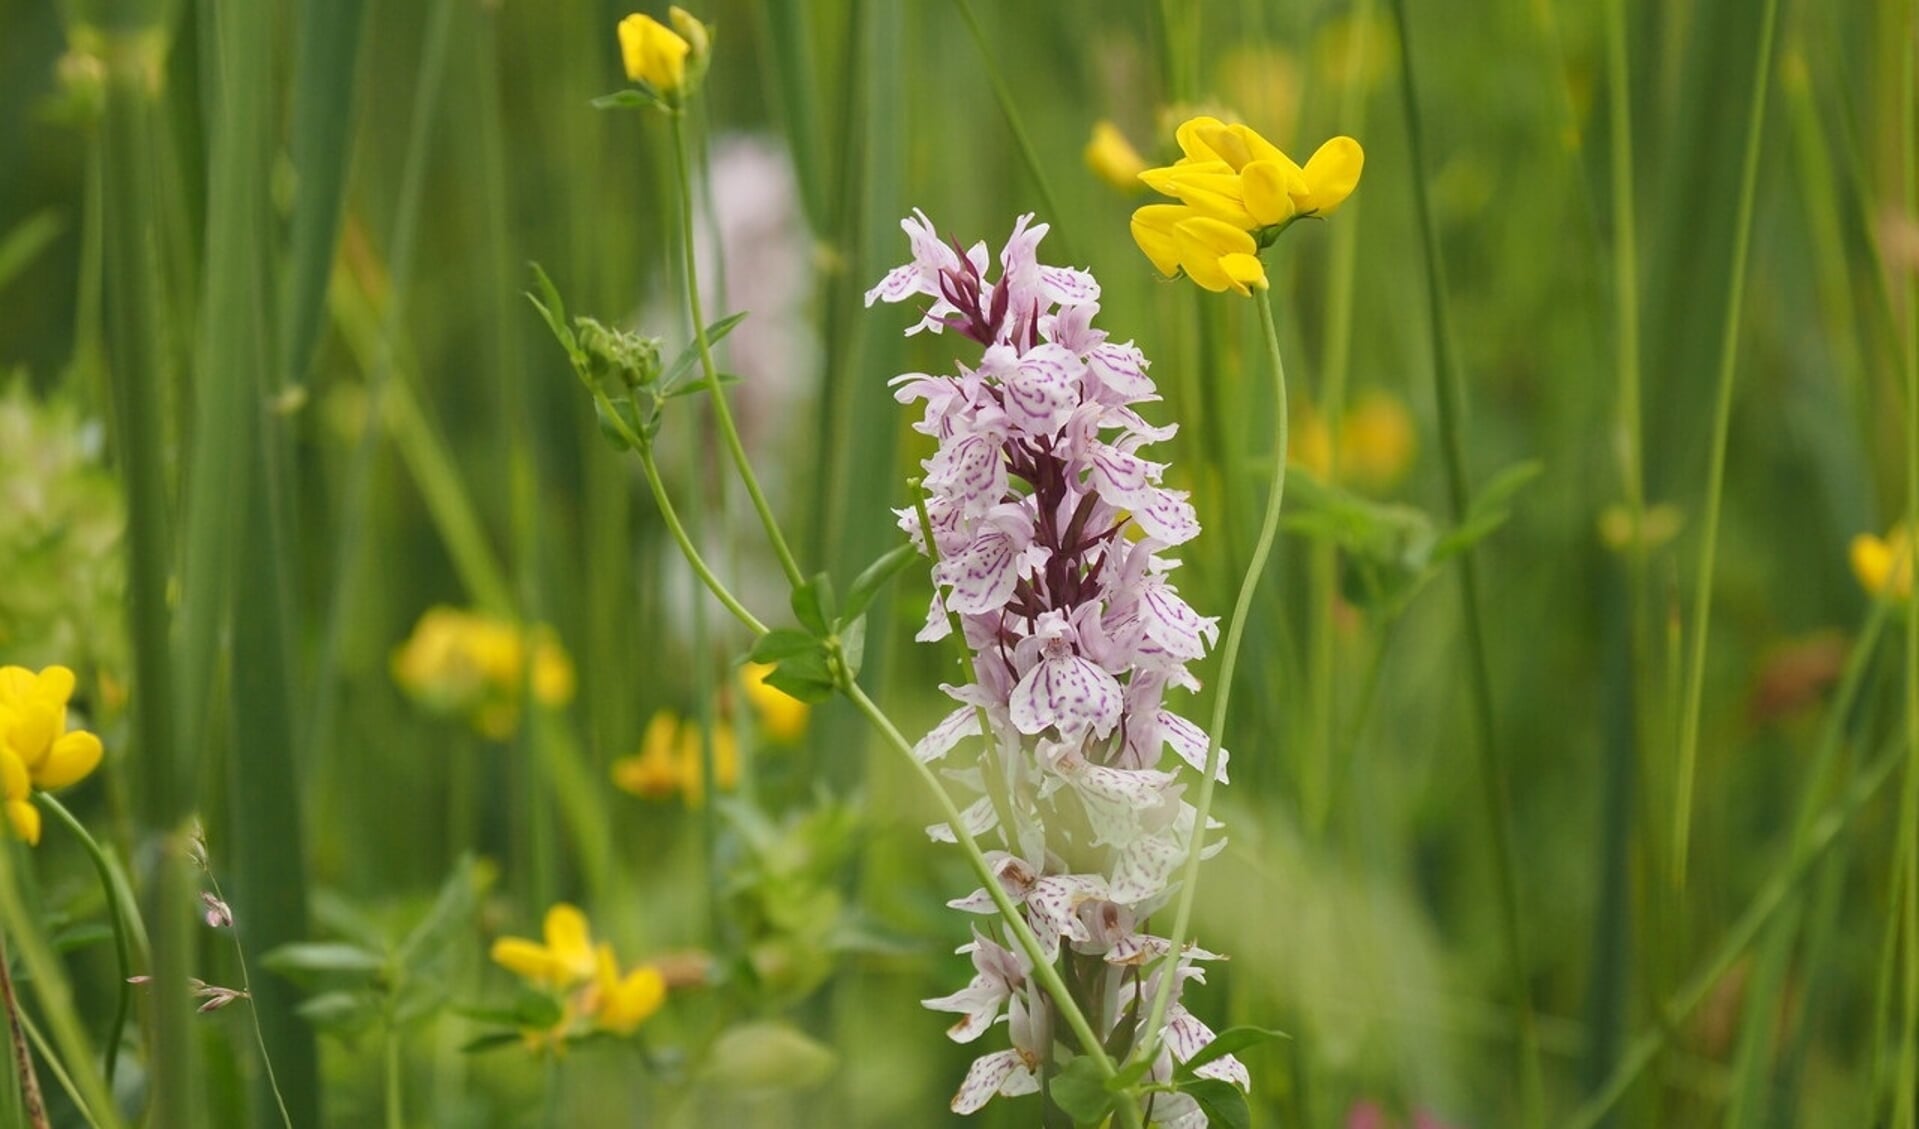 Ontdek?verborgen plekken met verschillende soorten orchideeën. Foto: Nico Kloek